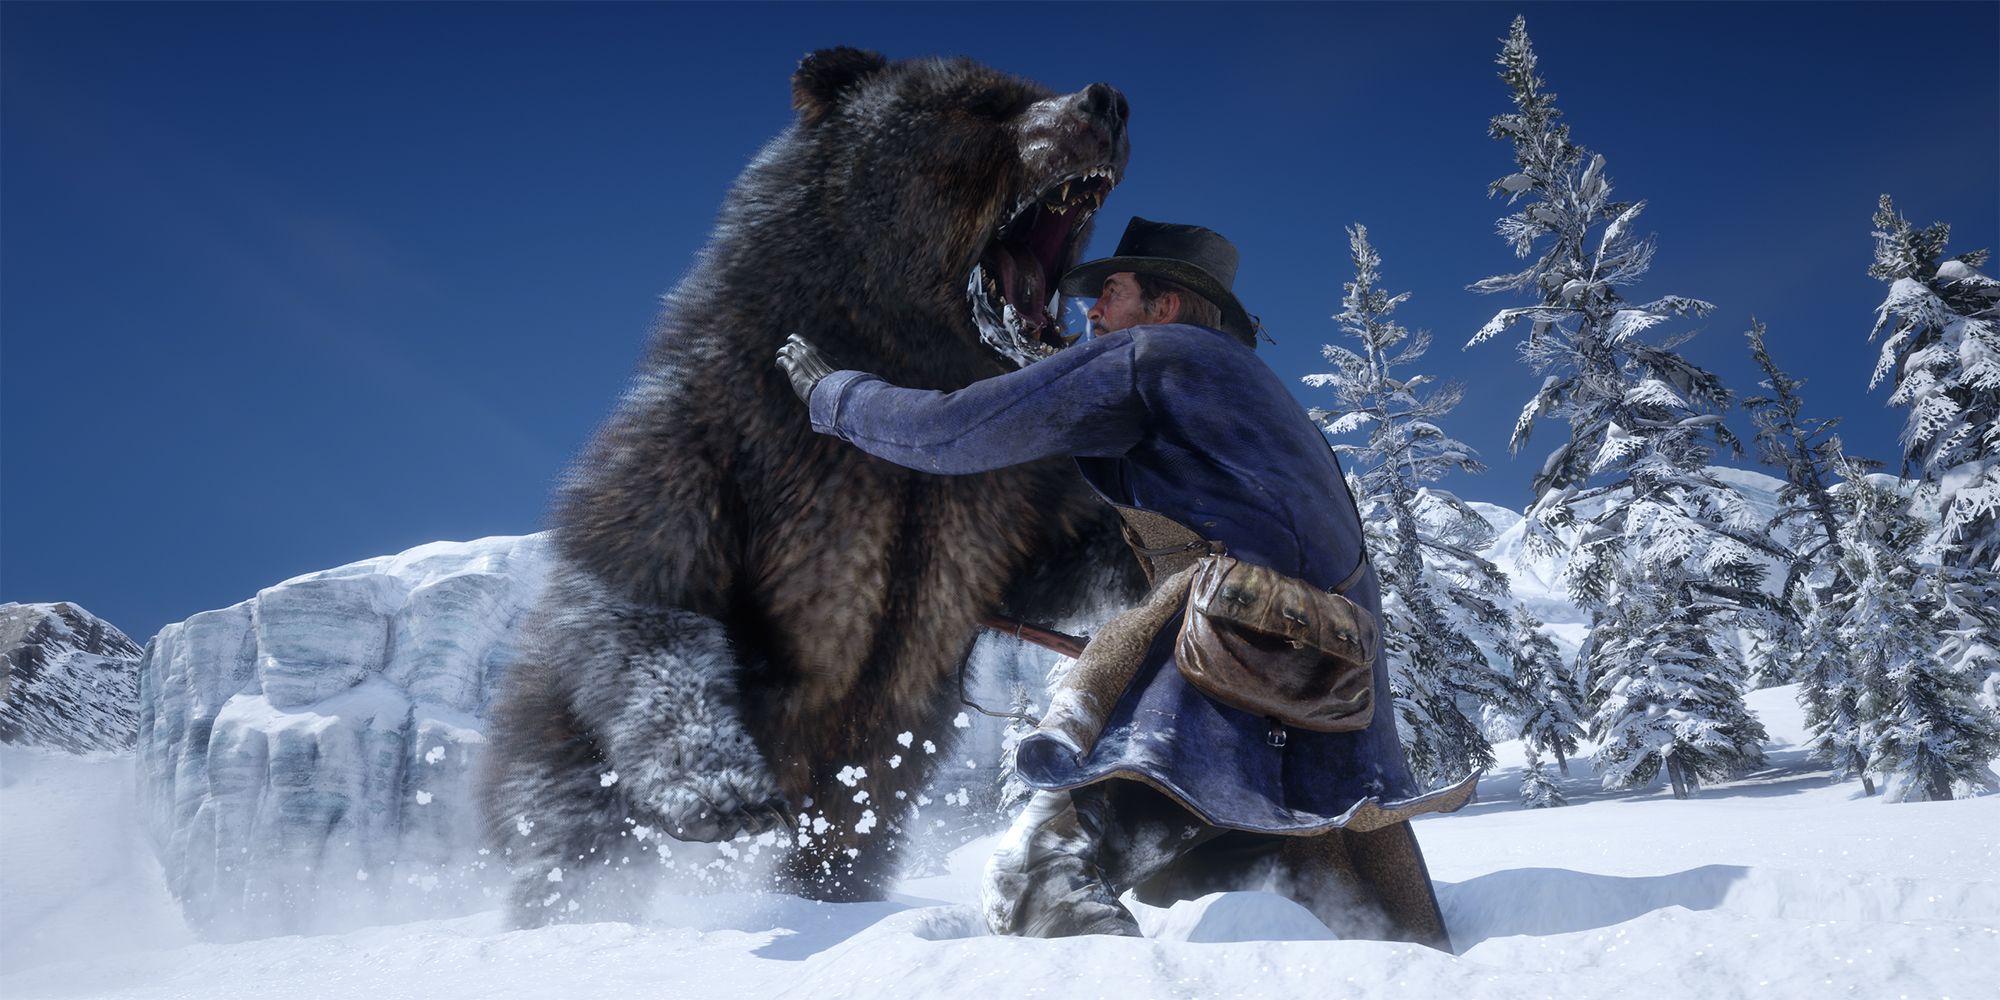 Le clip de Red Dead Redemption 2 est un rappel pourquoi les joueurs ne devraient jamais sous-estimer les ours